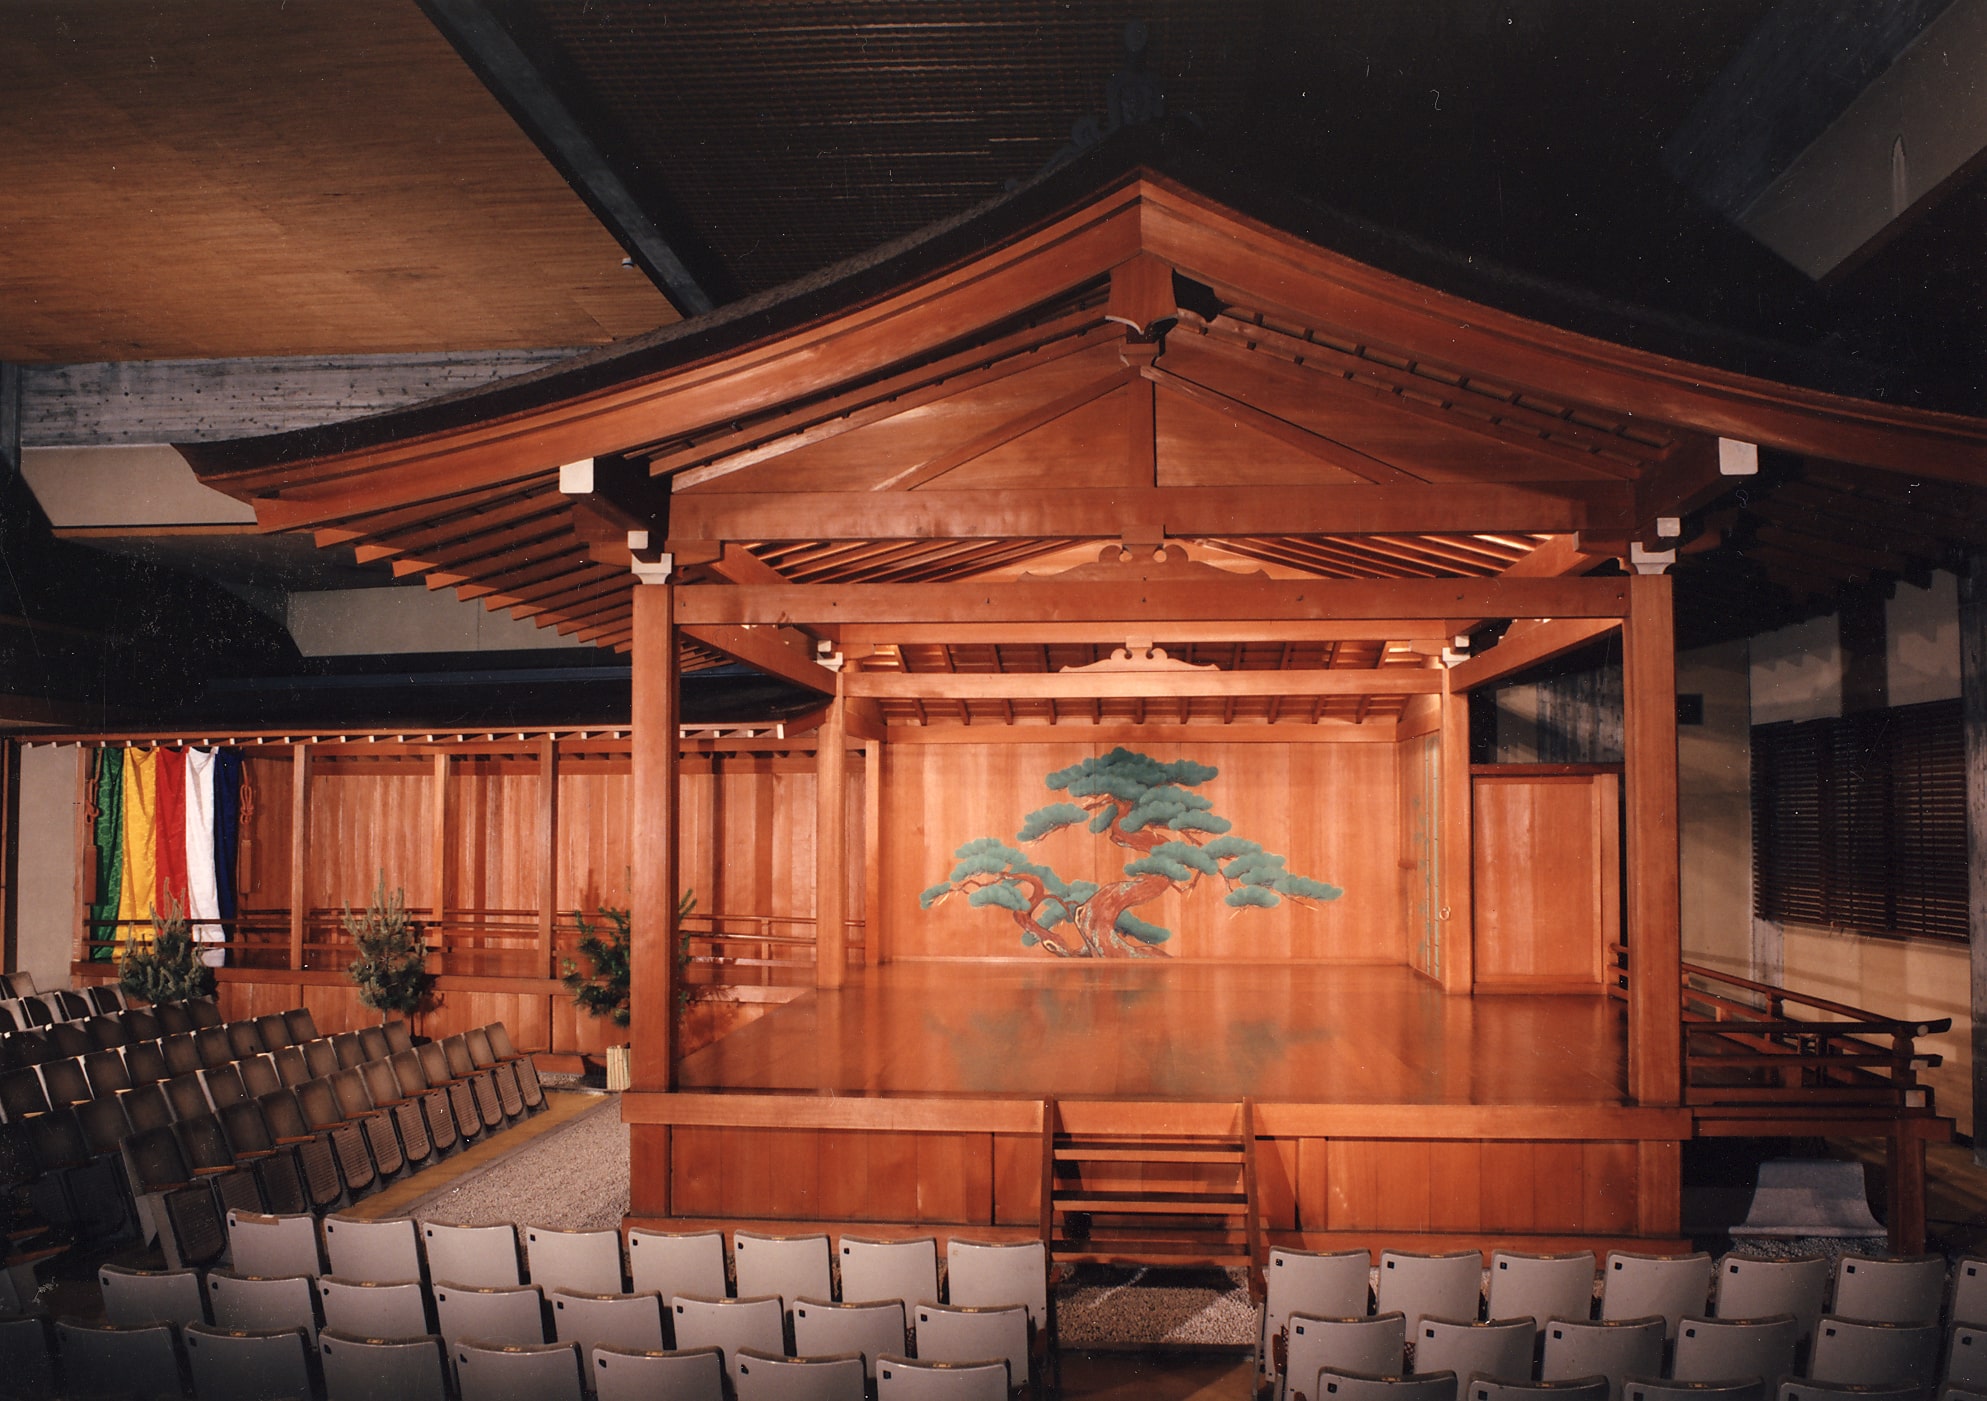 Umewaka Noh Theater